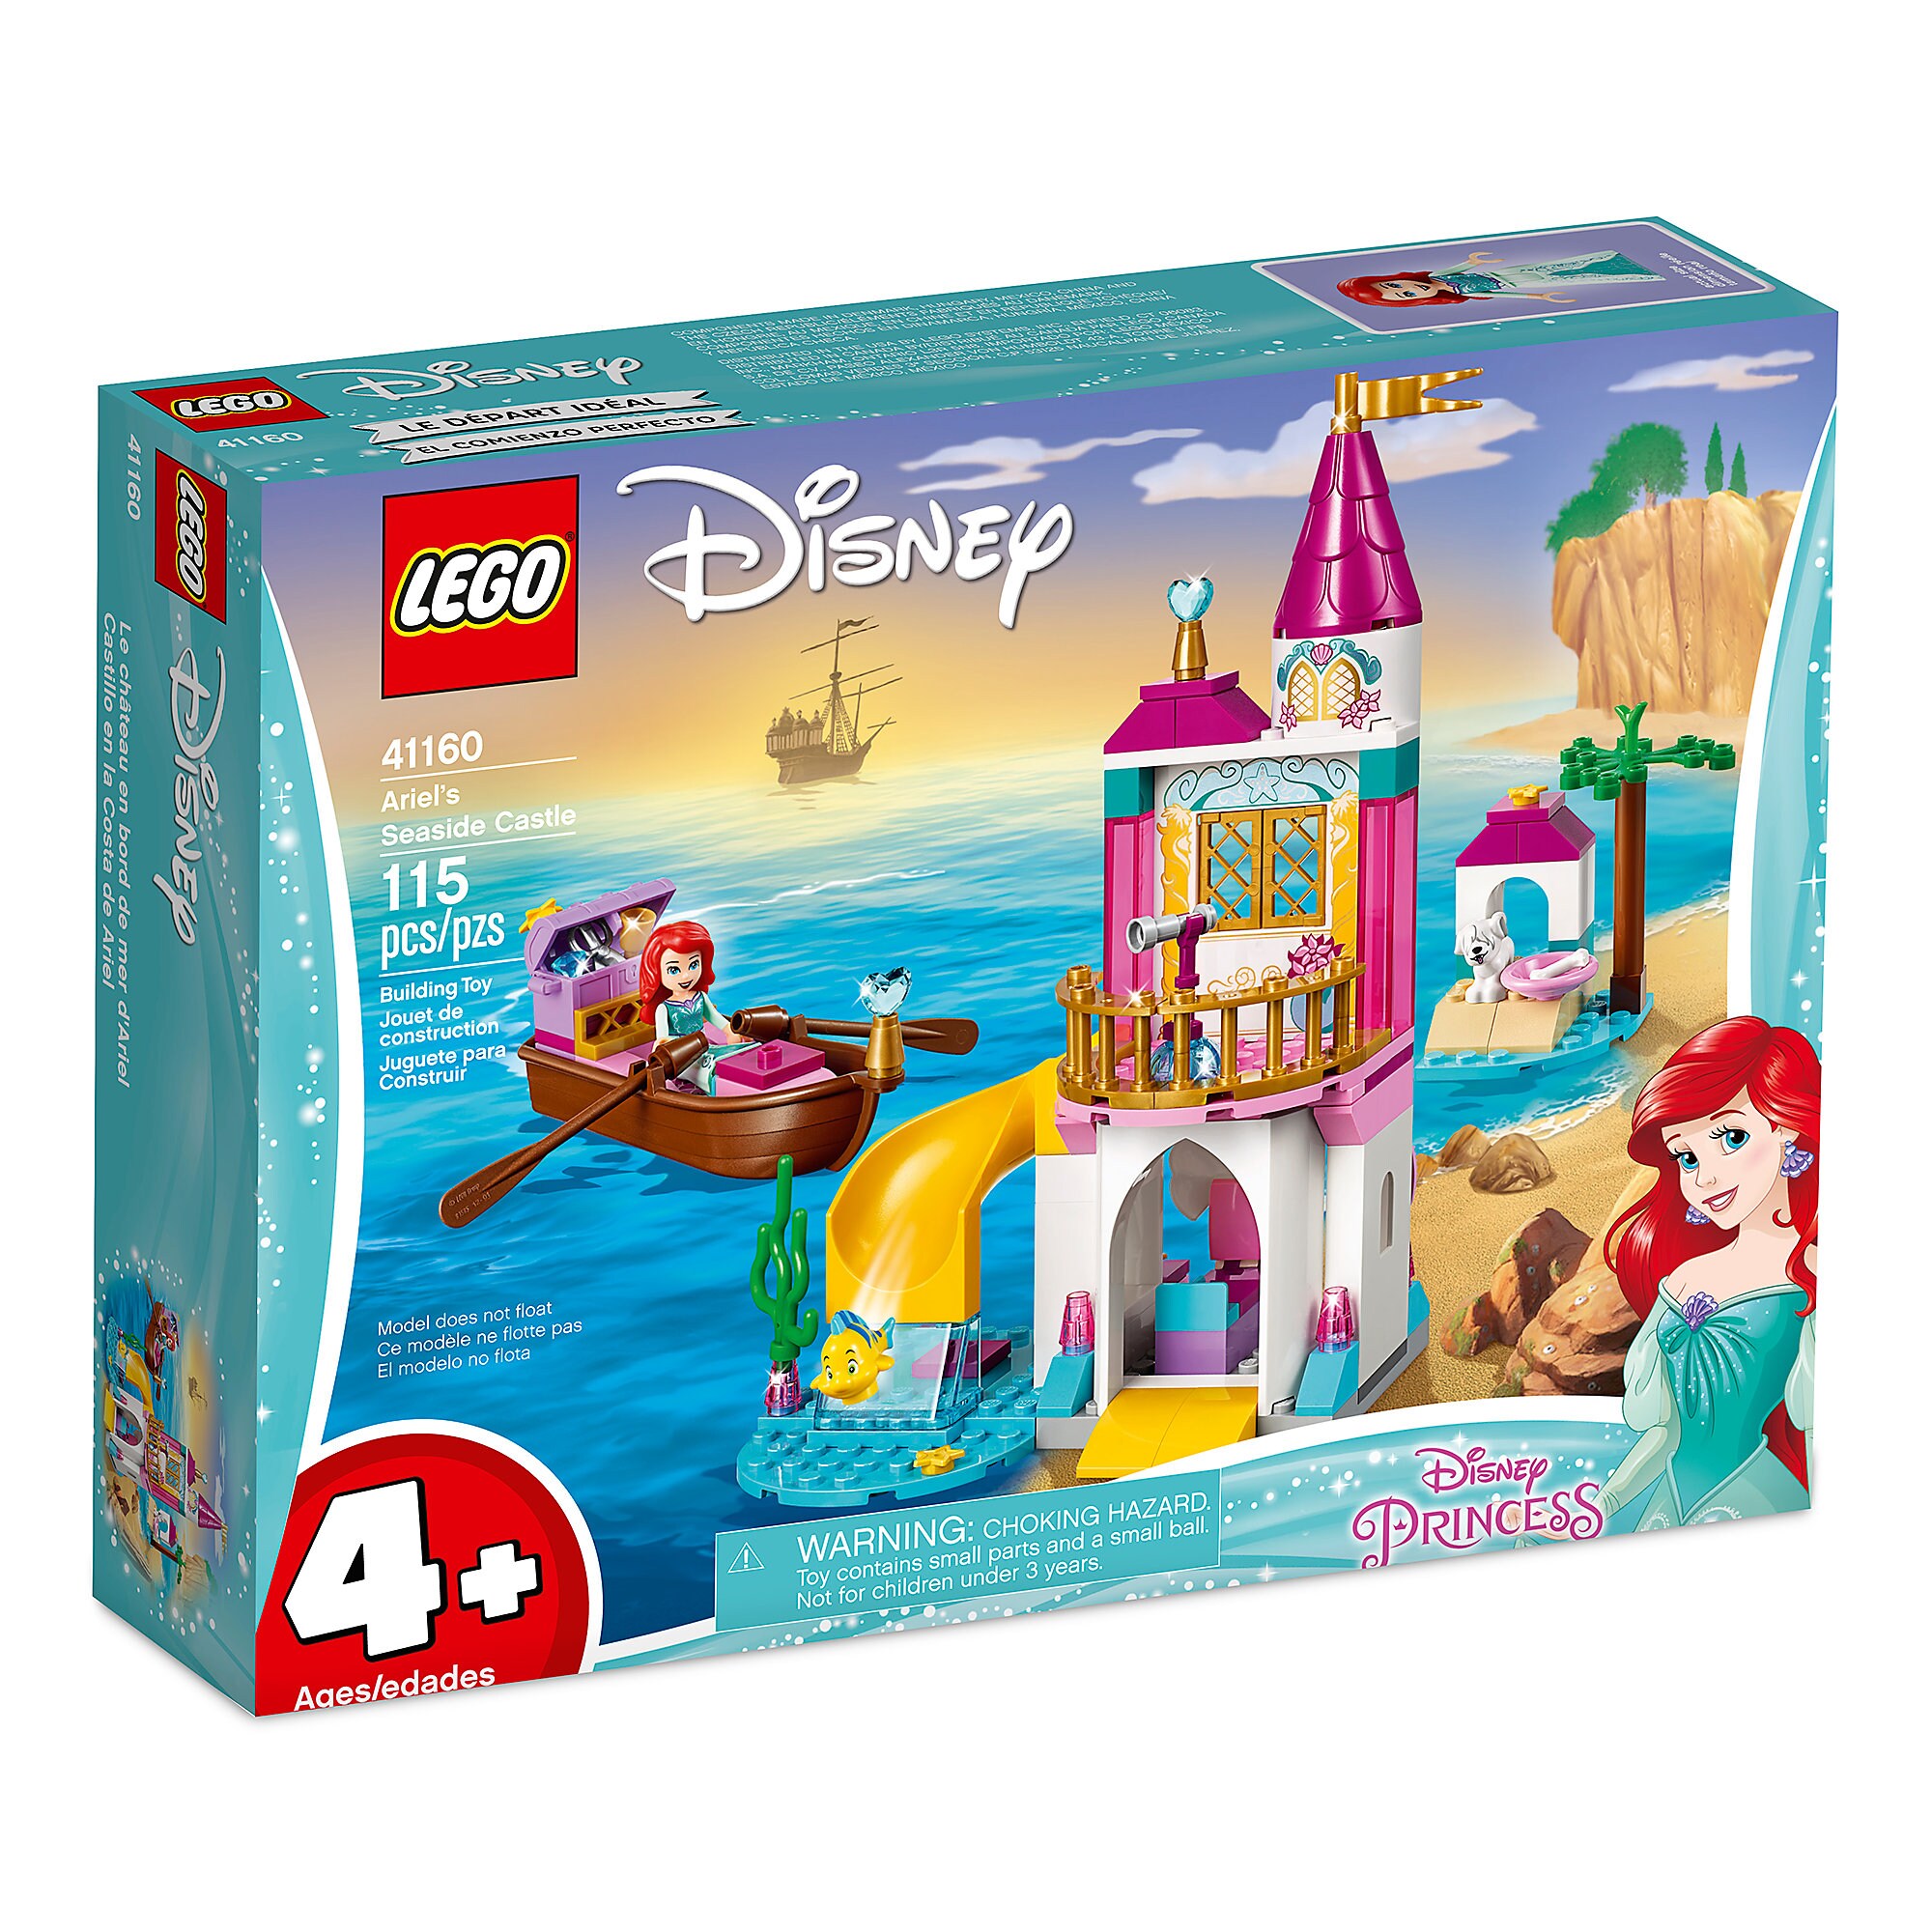 Ariel's Seaside Castle Playset by LEGO